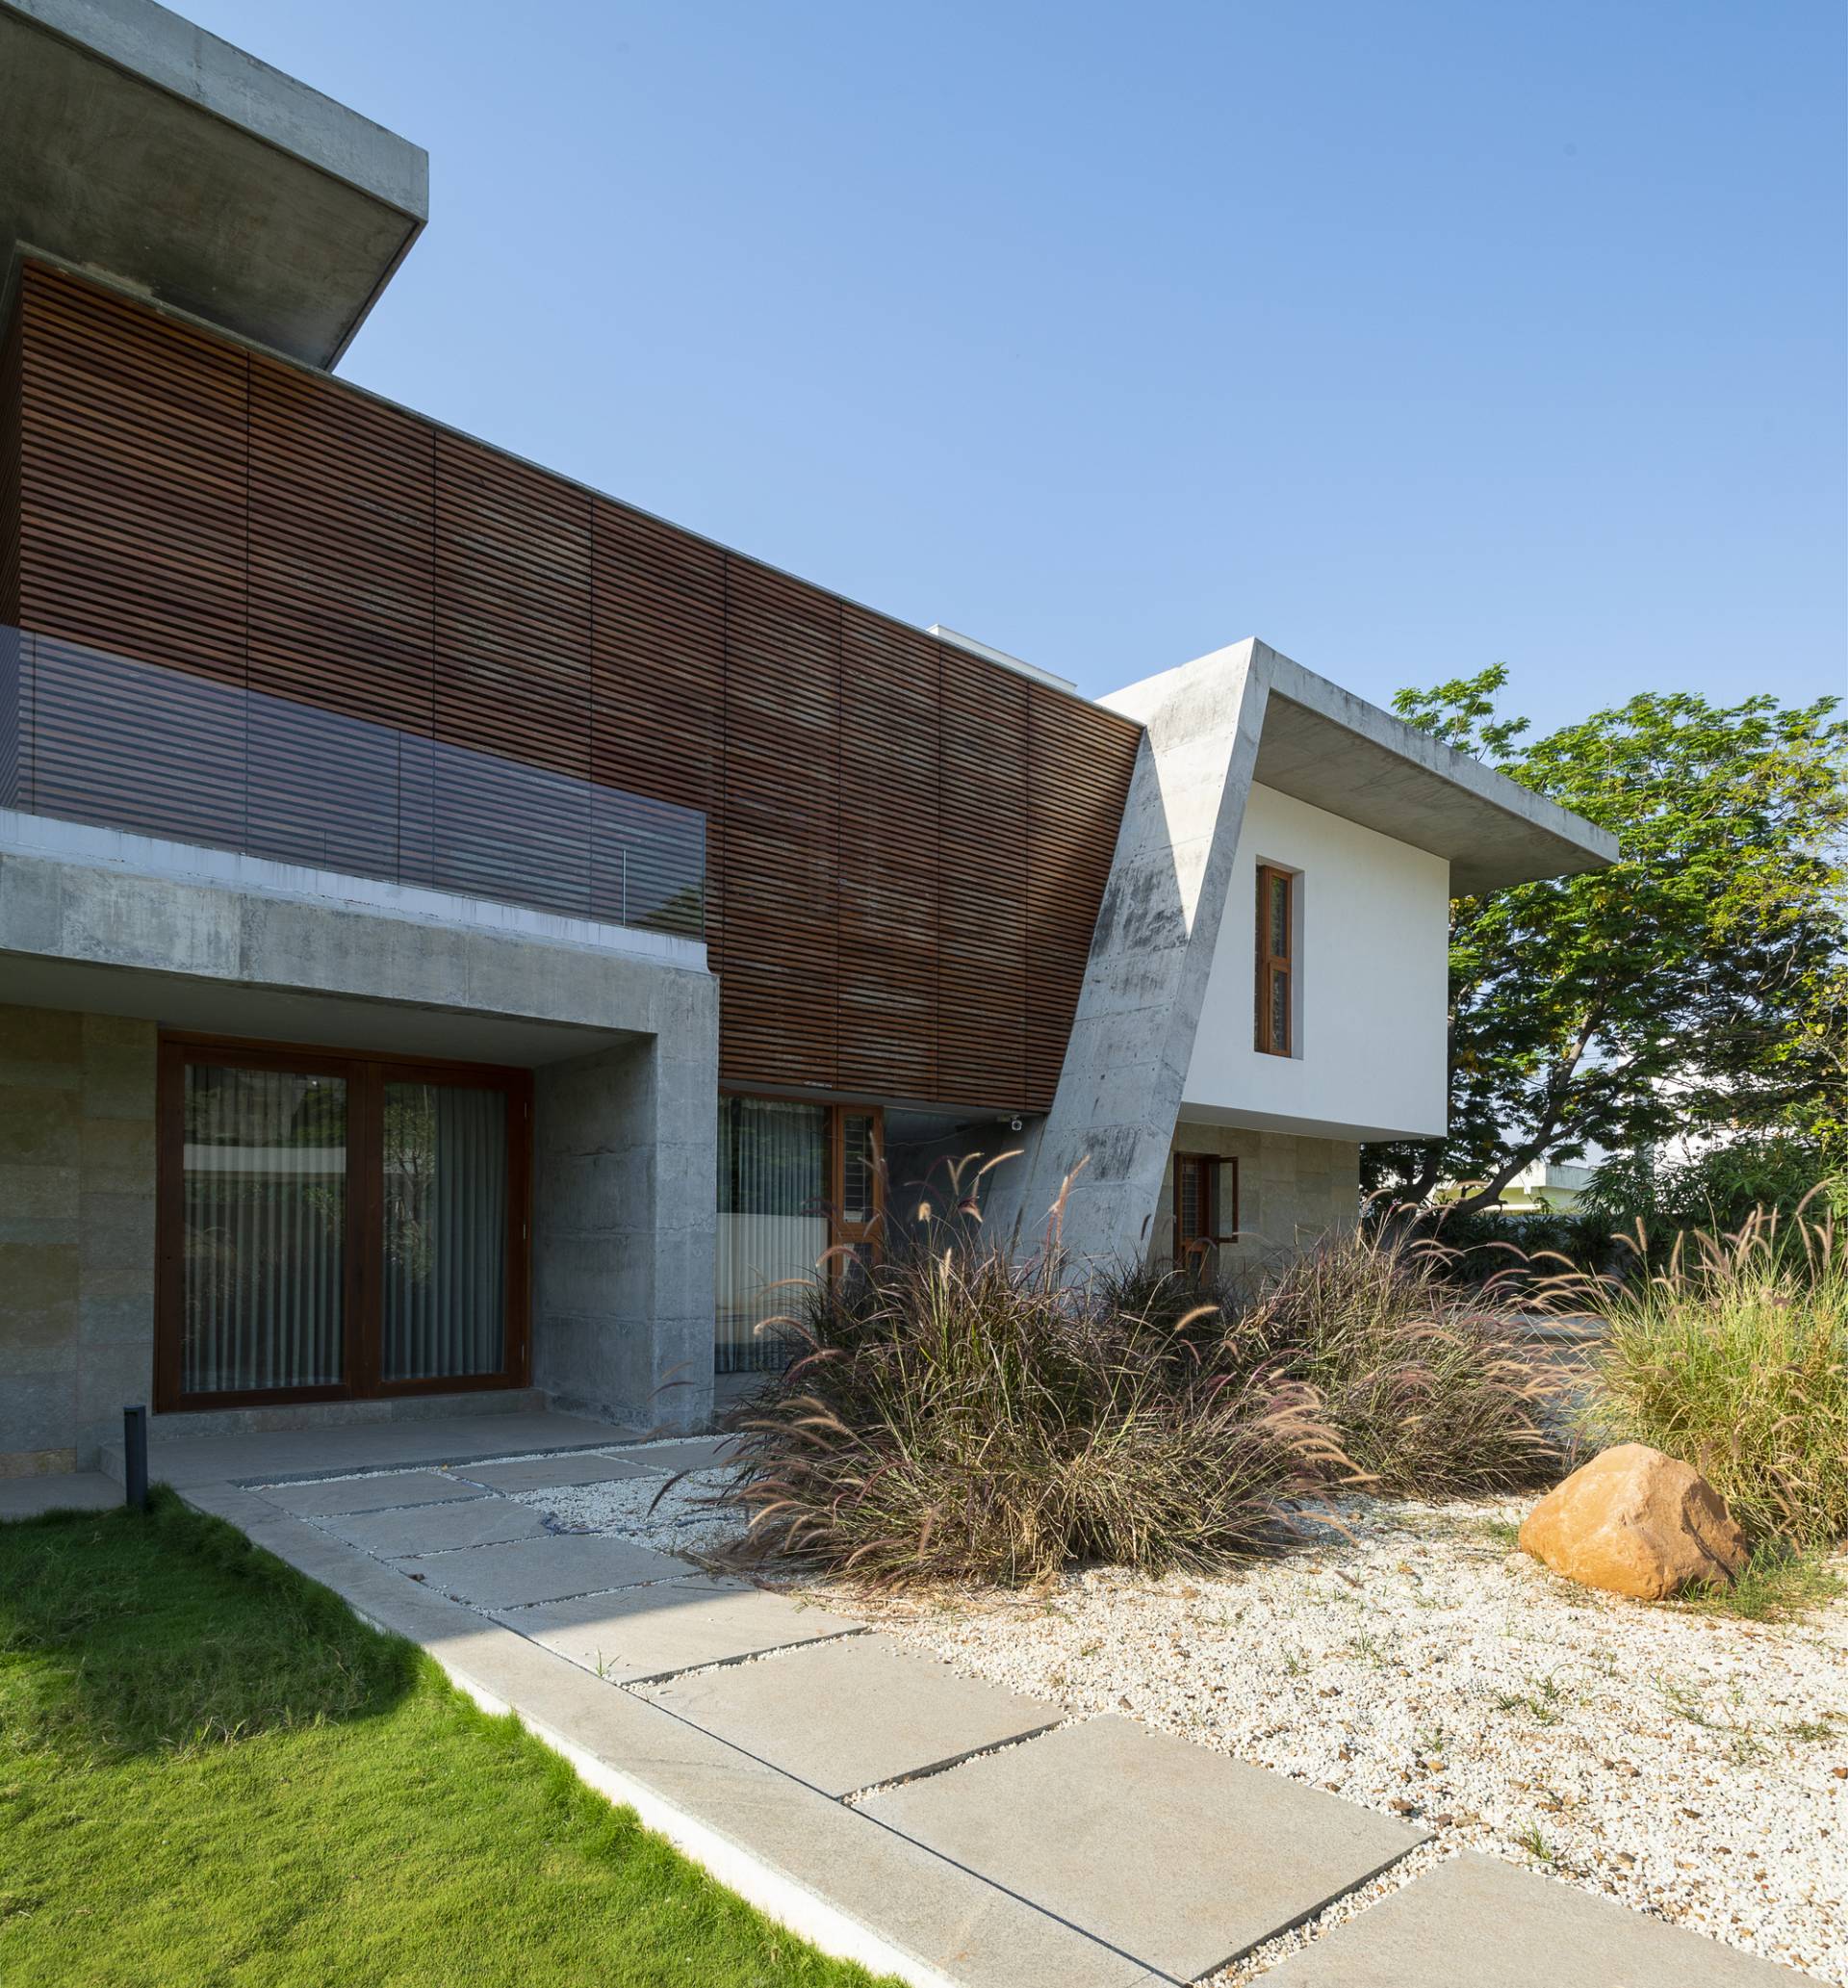 The Deck House - Kiến trúc hiện đại và đậm chất thiền